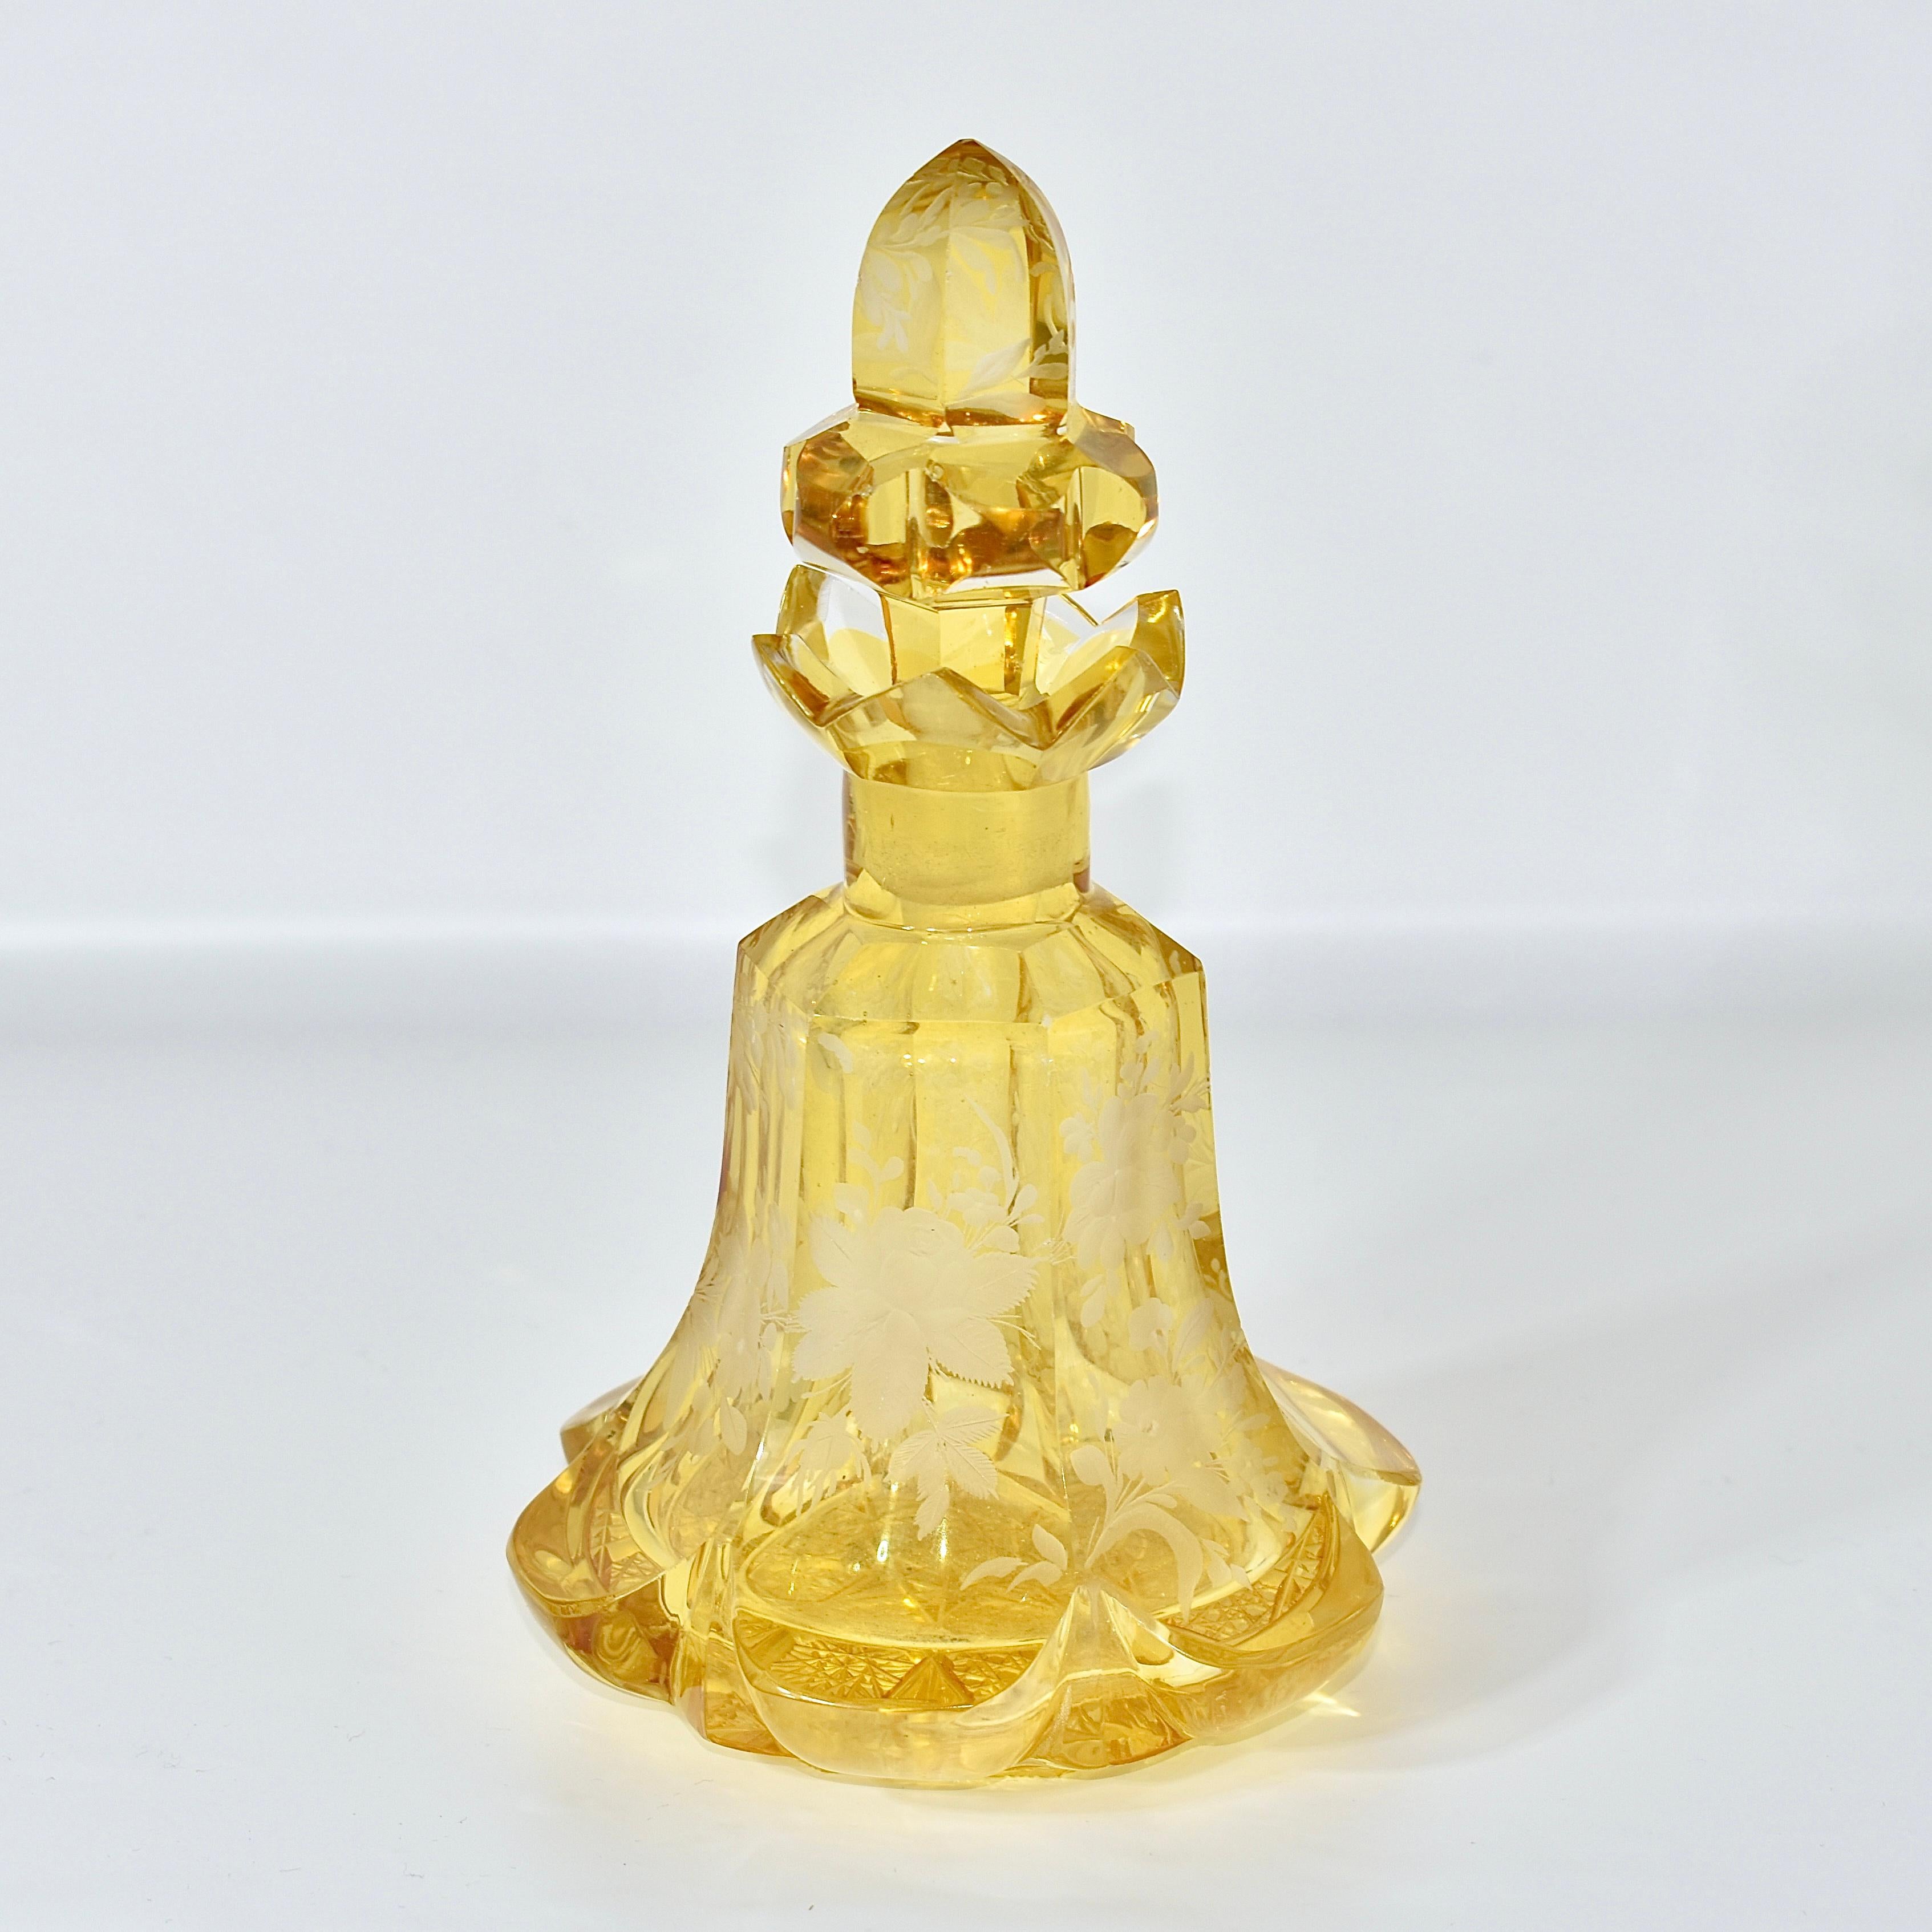 Antike Parfümflasche, mit Stopfen, sehr seltenes bernsteinfarbenes Kristallglas

rundum fein graviert mit Naturszene aus Blättern und Blumen

der brillant geschliffene Sockel an der Unterseite zeigt die Qualität und Authentizität dieses